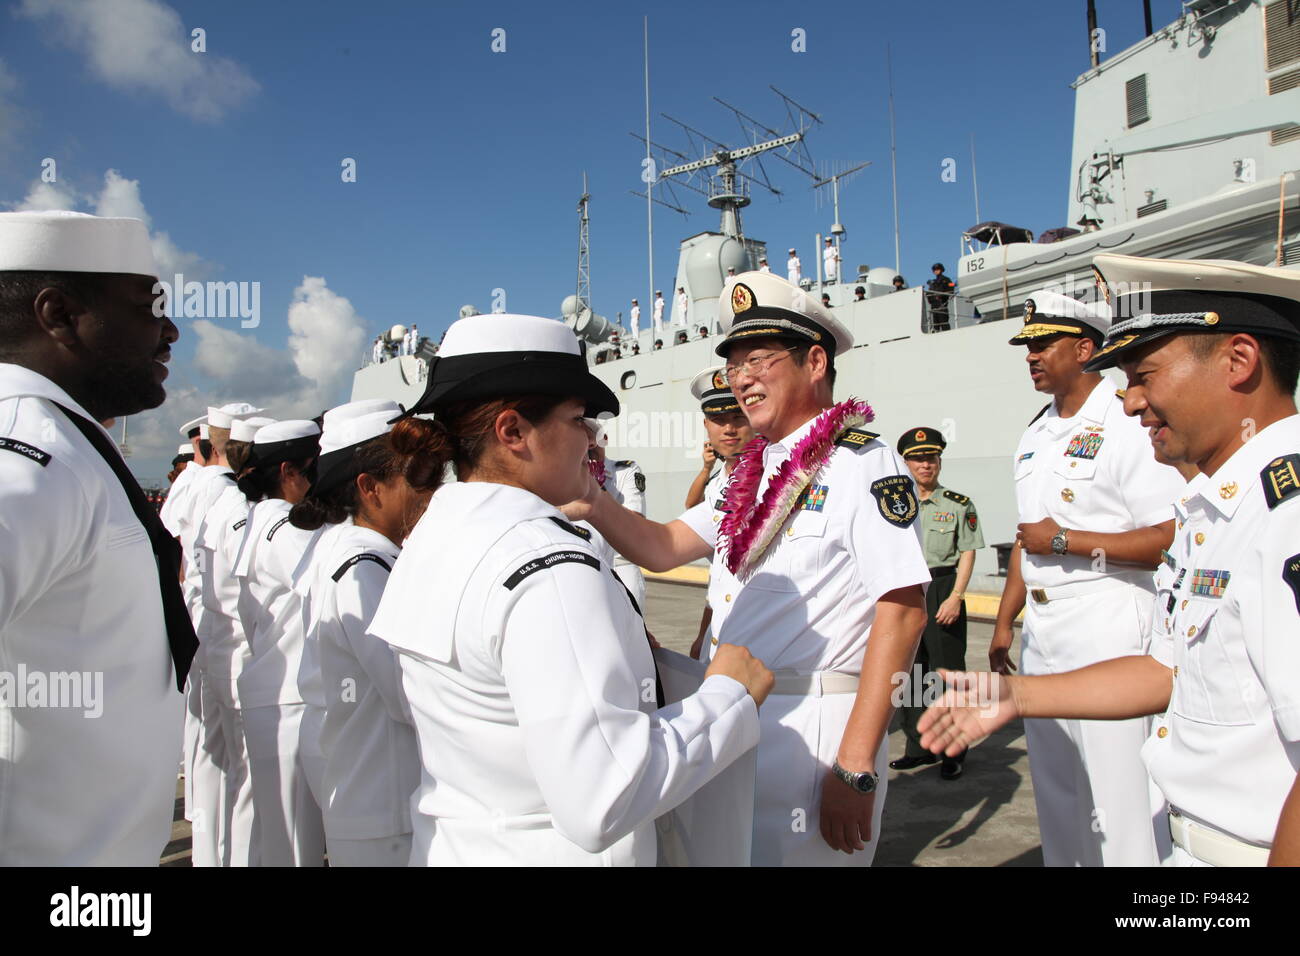 New York, USA. 13 Décembre, 2015. Les dirigeants d'une flotille de la Chinese People's Liberation Army Navy sont accueillis à Pearl Harbor à Hawaï, aux États-Unis, le 13 décembre 2015. La flottille de l'Armée de libération du peuple chinois, qui comprend le destroyer "Shanghai", la frégate 'Yiyang' et le navire de ravitaillement complet "Qiandaohu", est arrivé à Pearl Harbor le dimanche pour une visite amicale de cinq jours. © Xue Ying/Xinhua/Alamy Live News Banque D'Images